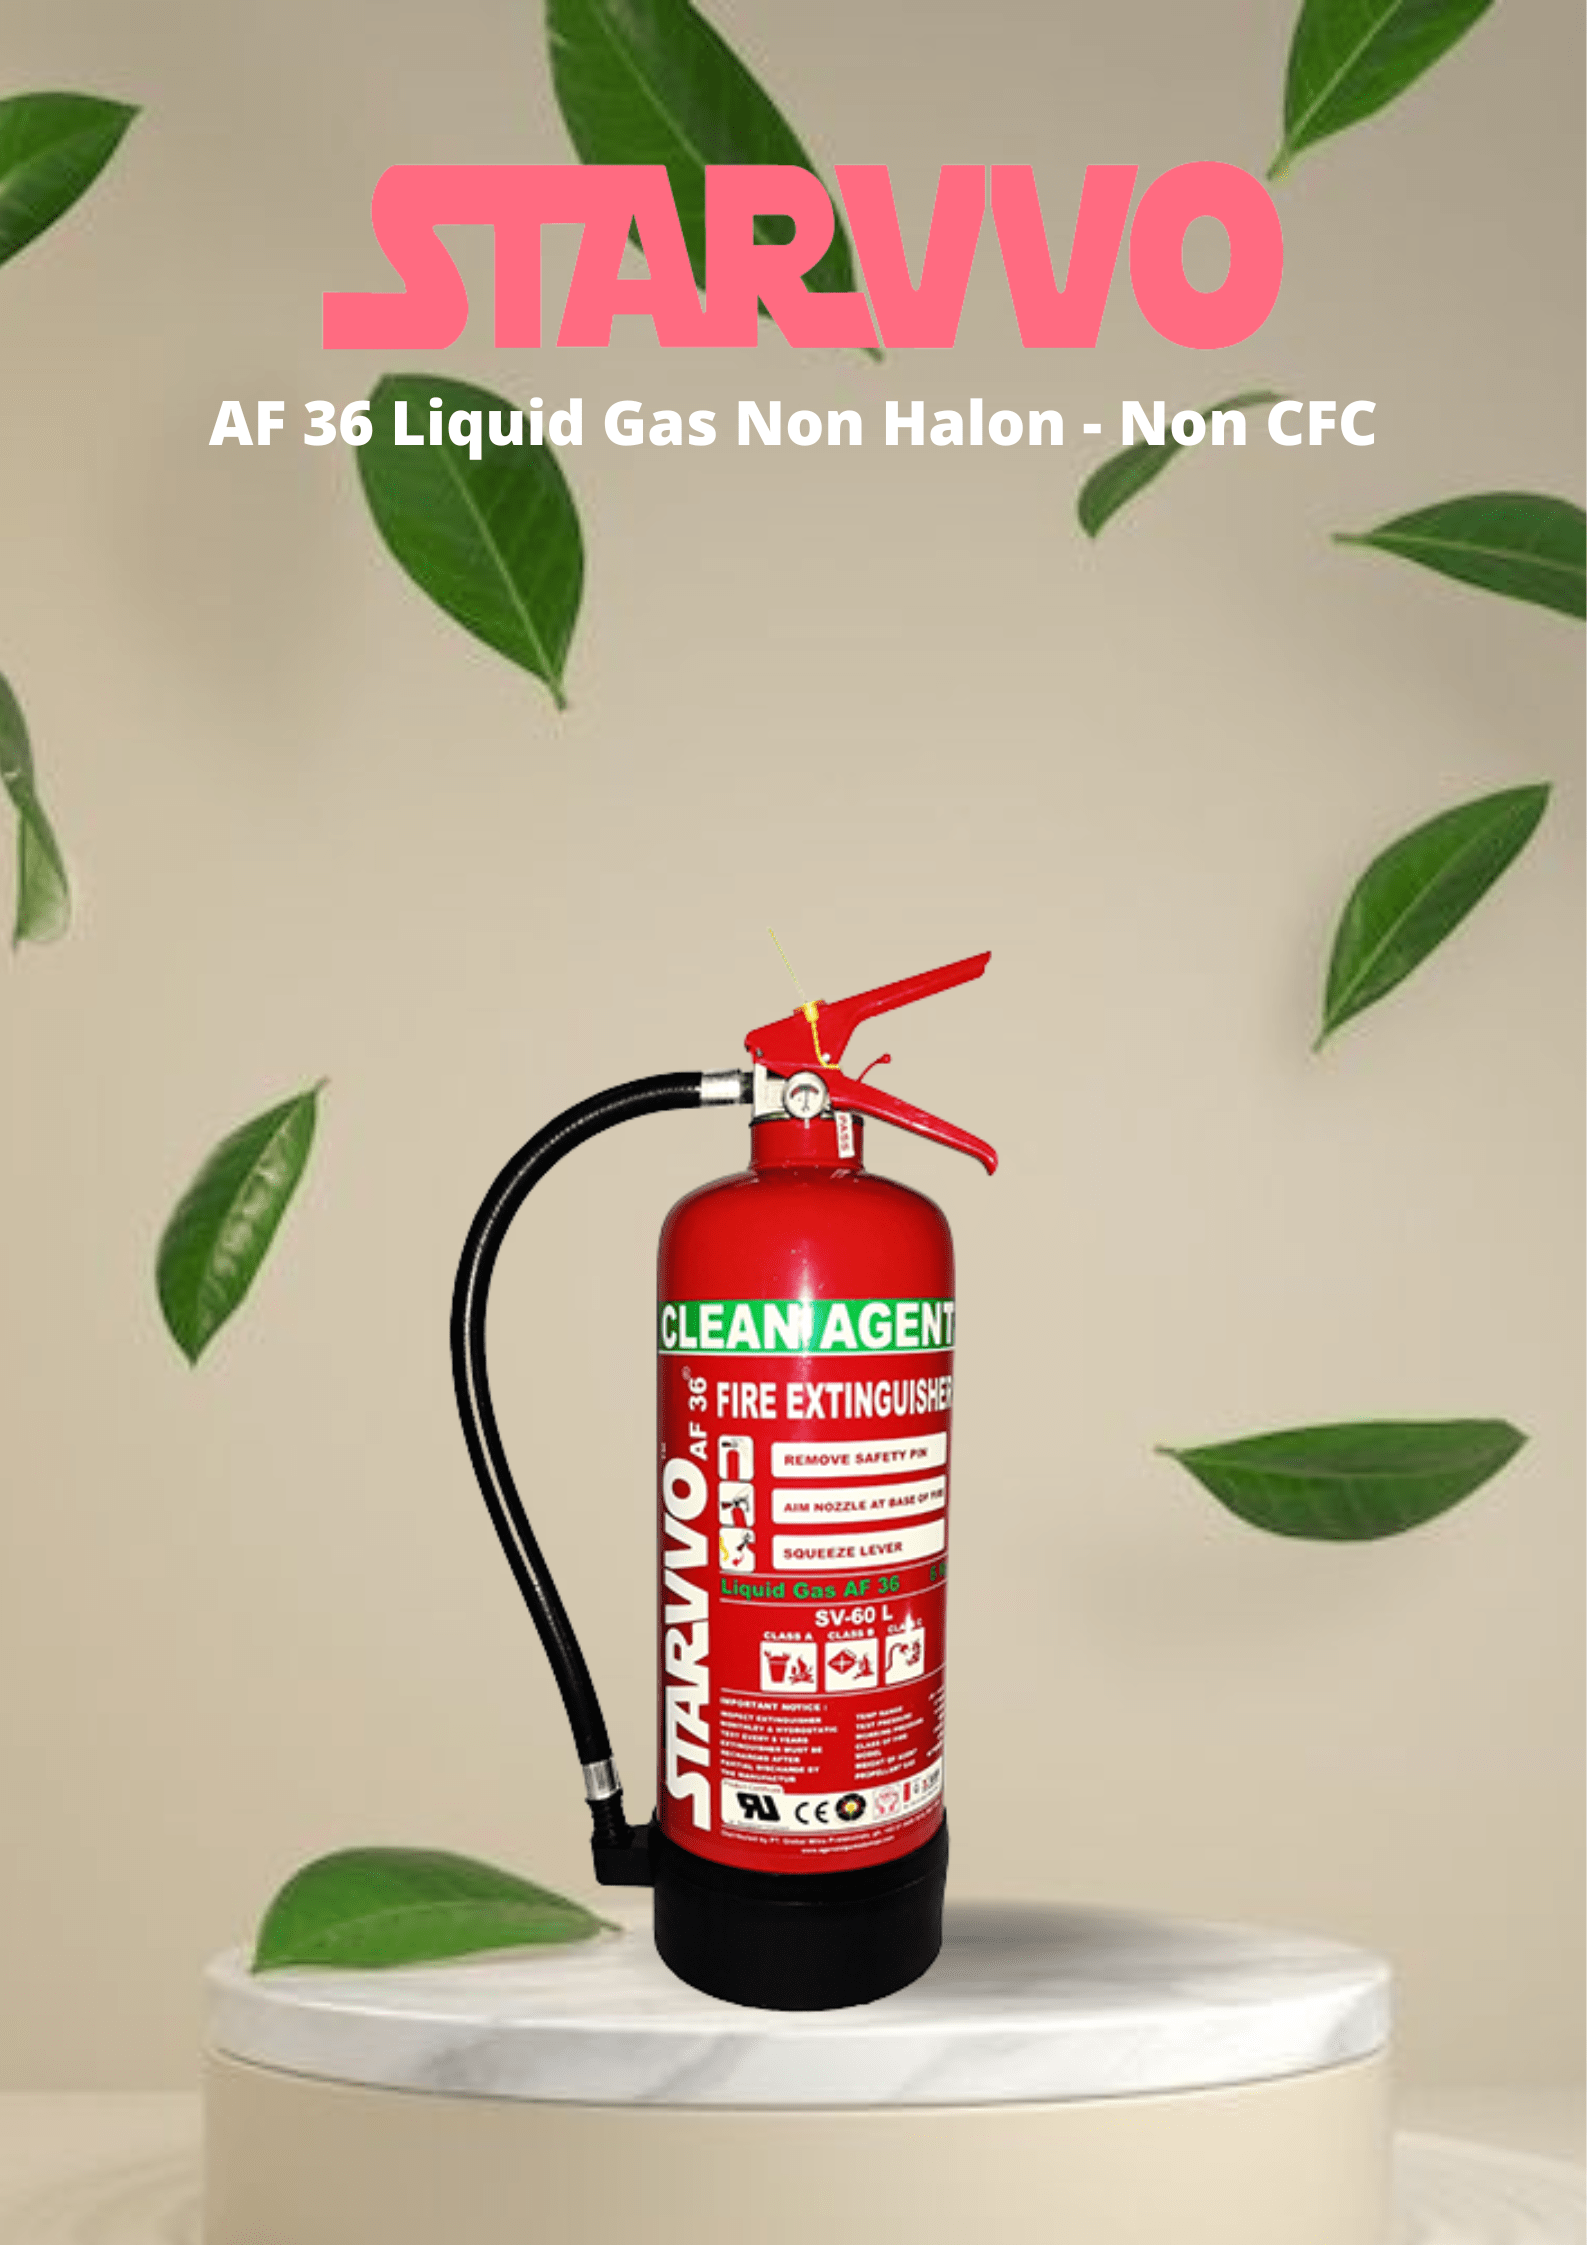 STARVVO AF36 Clean Agent Fire Extinguisher